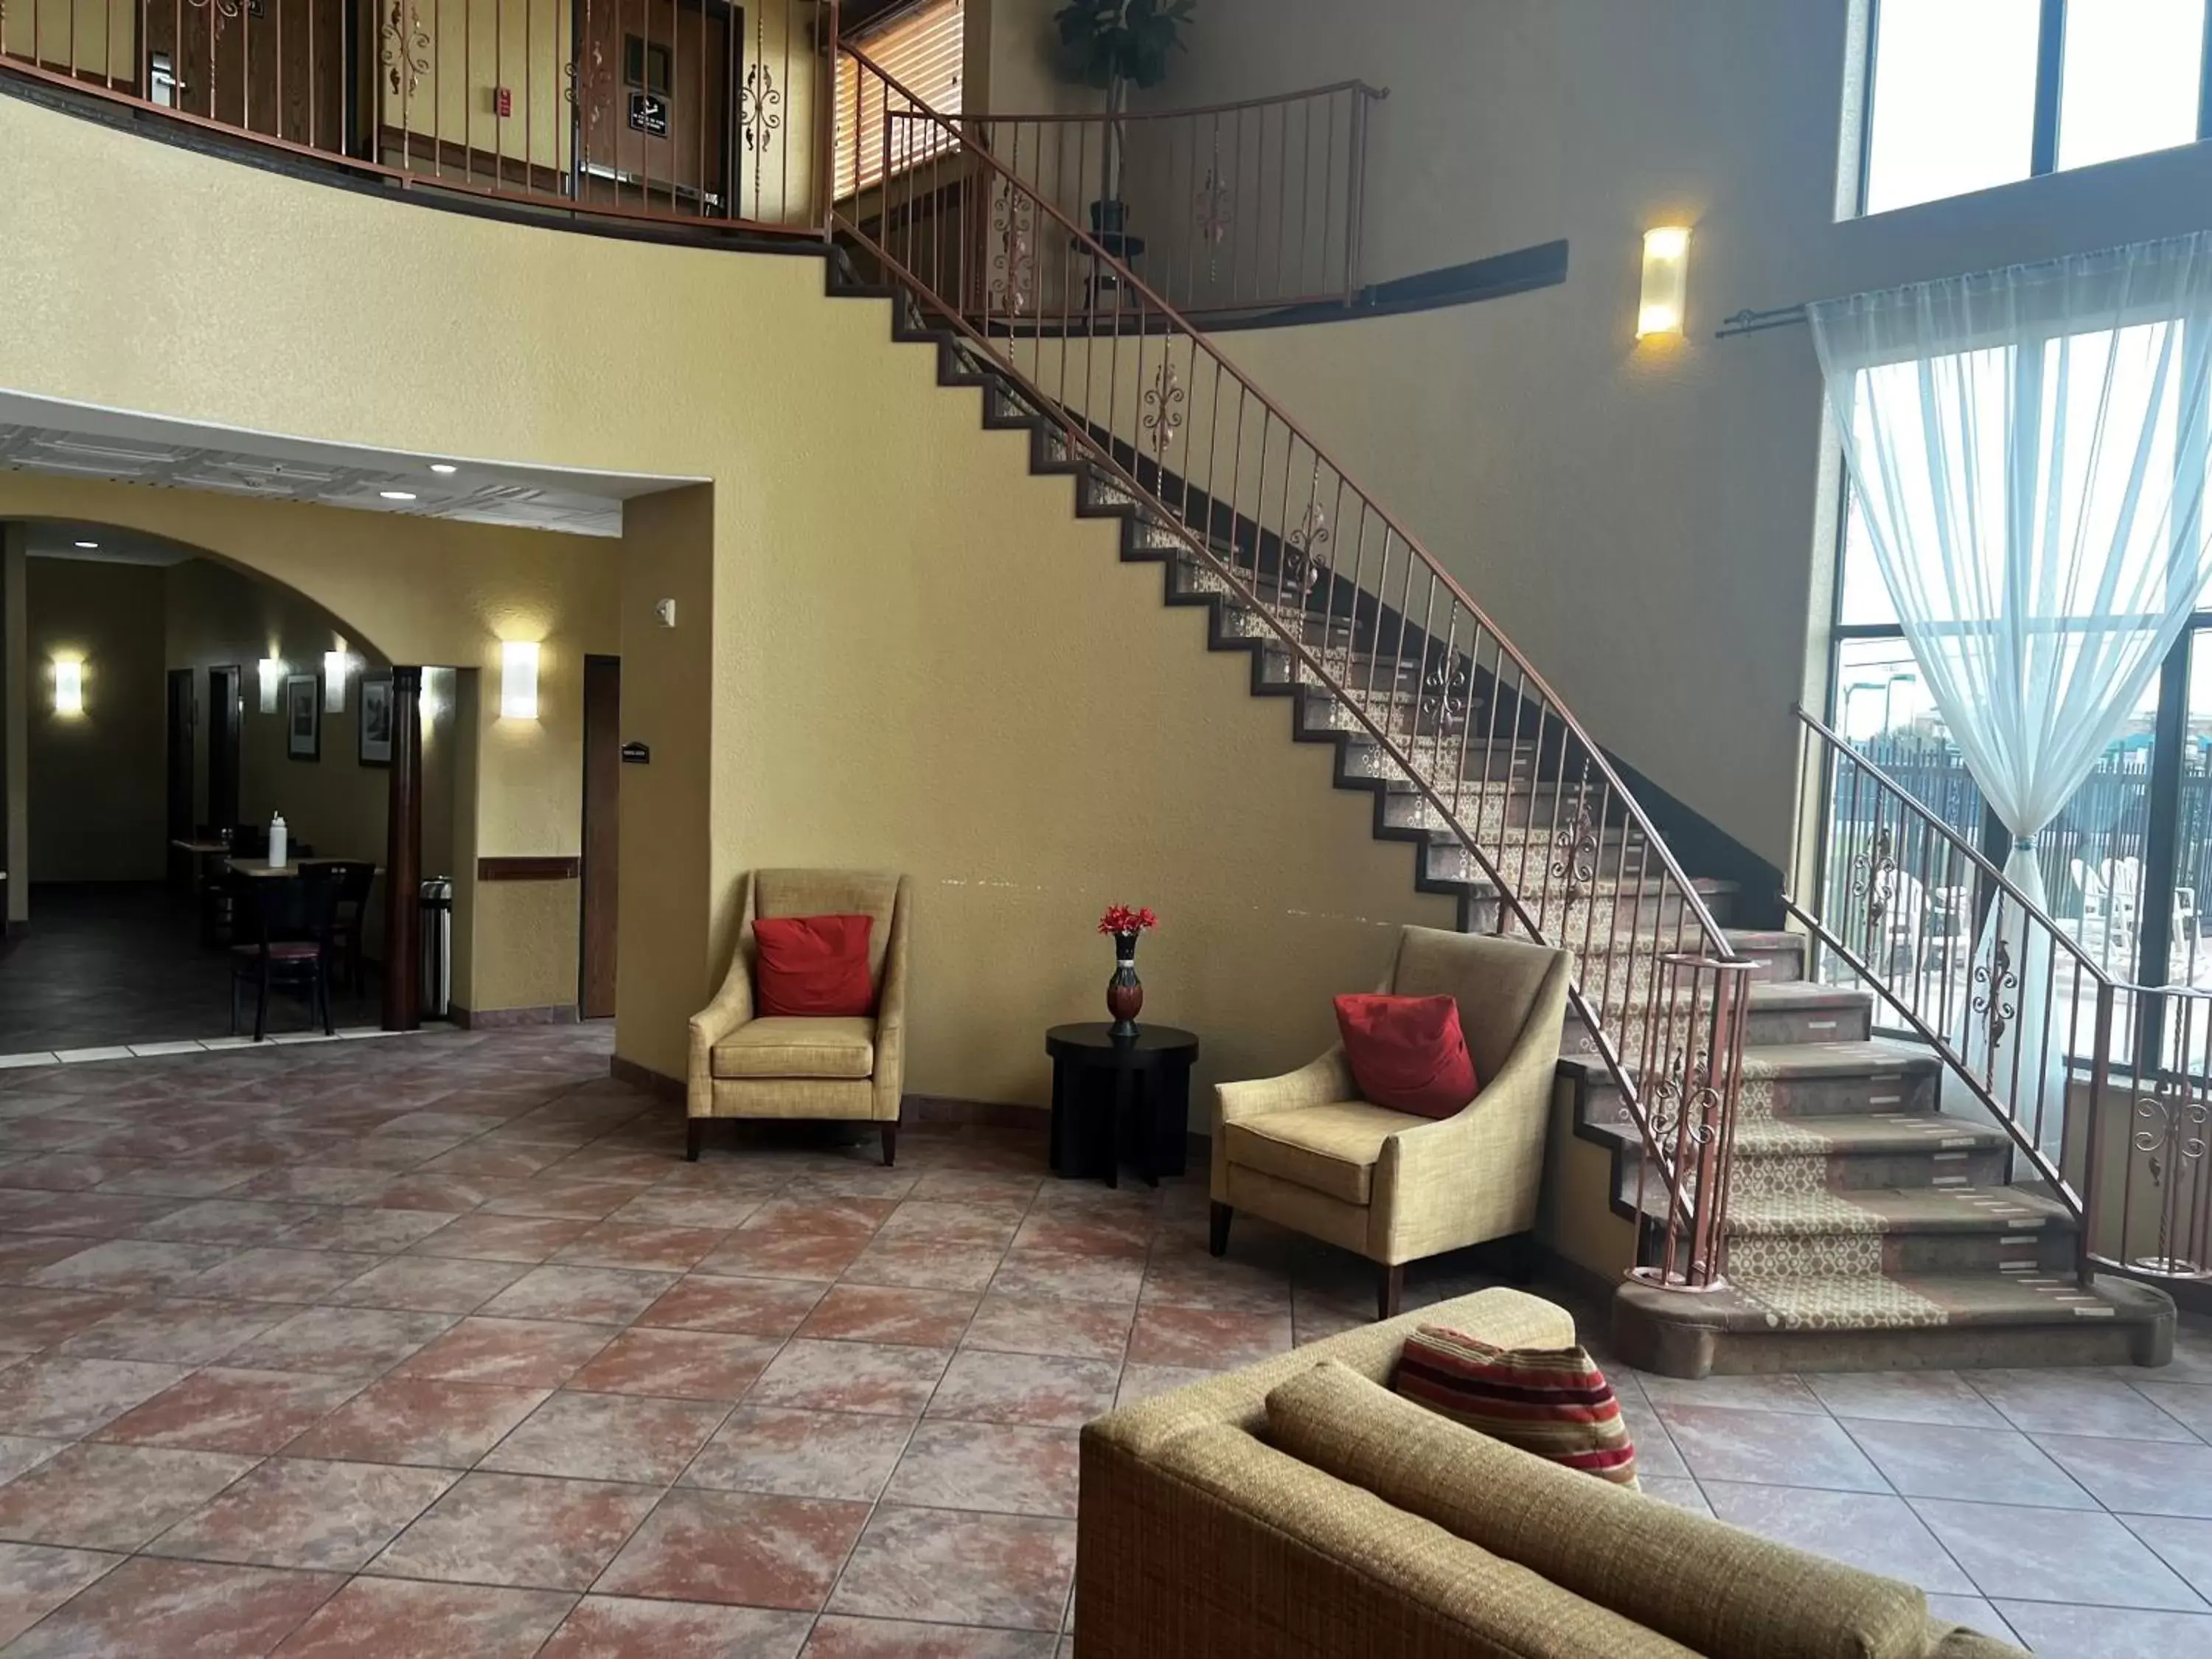 Lobby or reception in Baymont by Wyndham Cuero